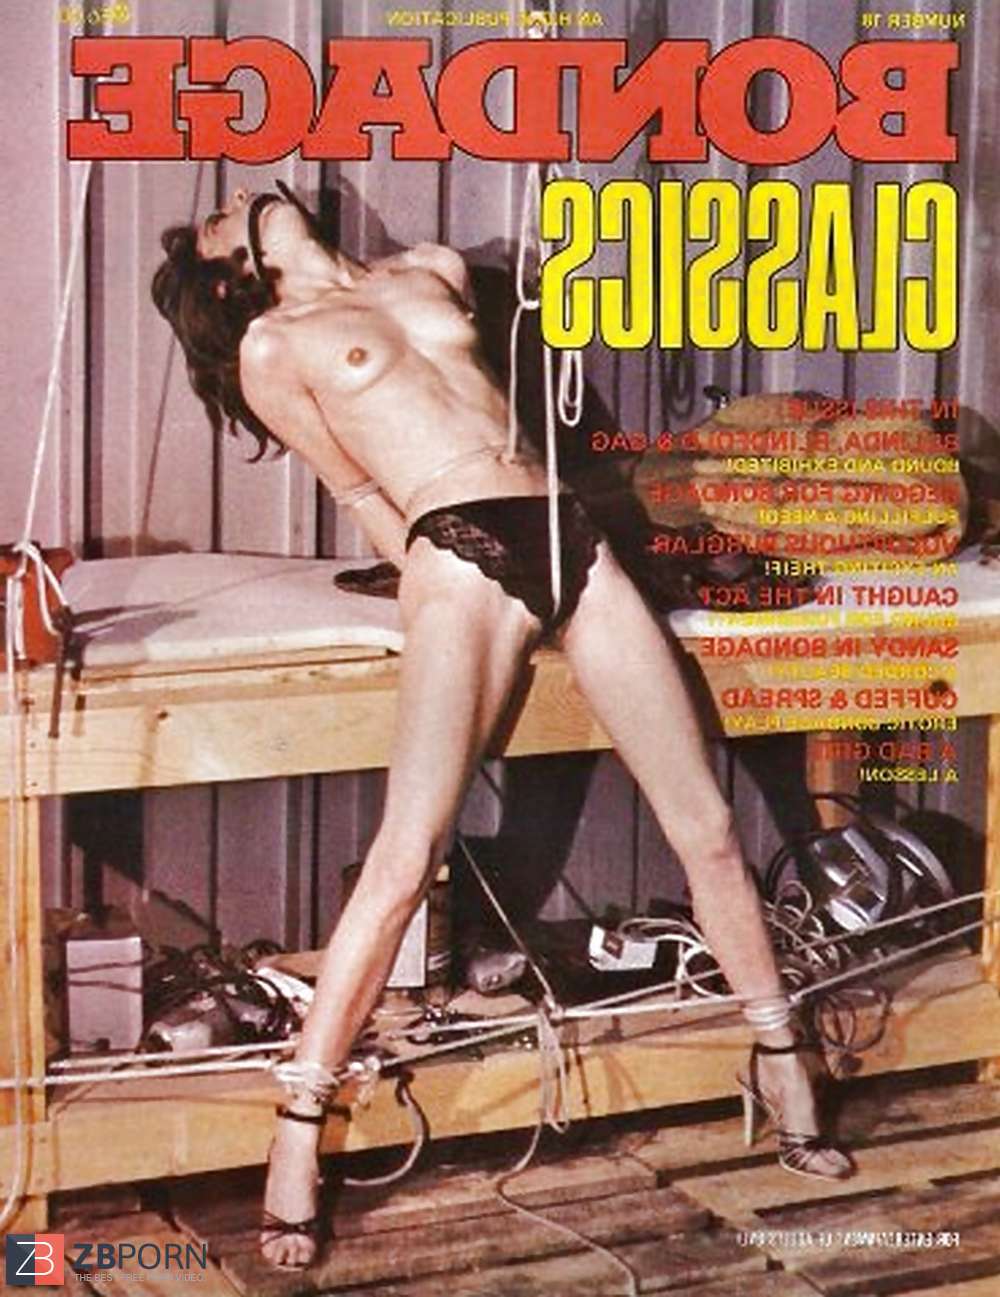 My Vintage Restrain Bondage Magazines (glazes ) - ZB Porn.